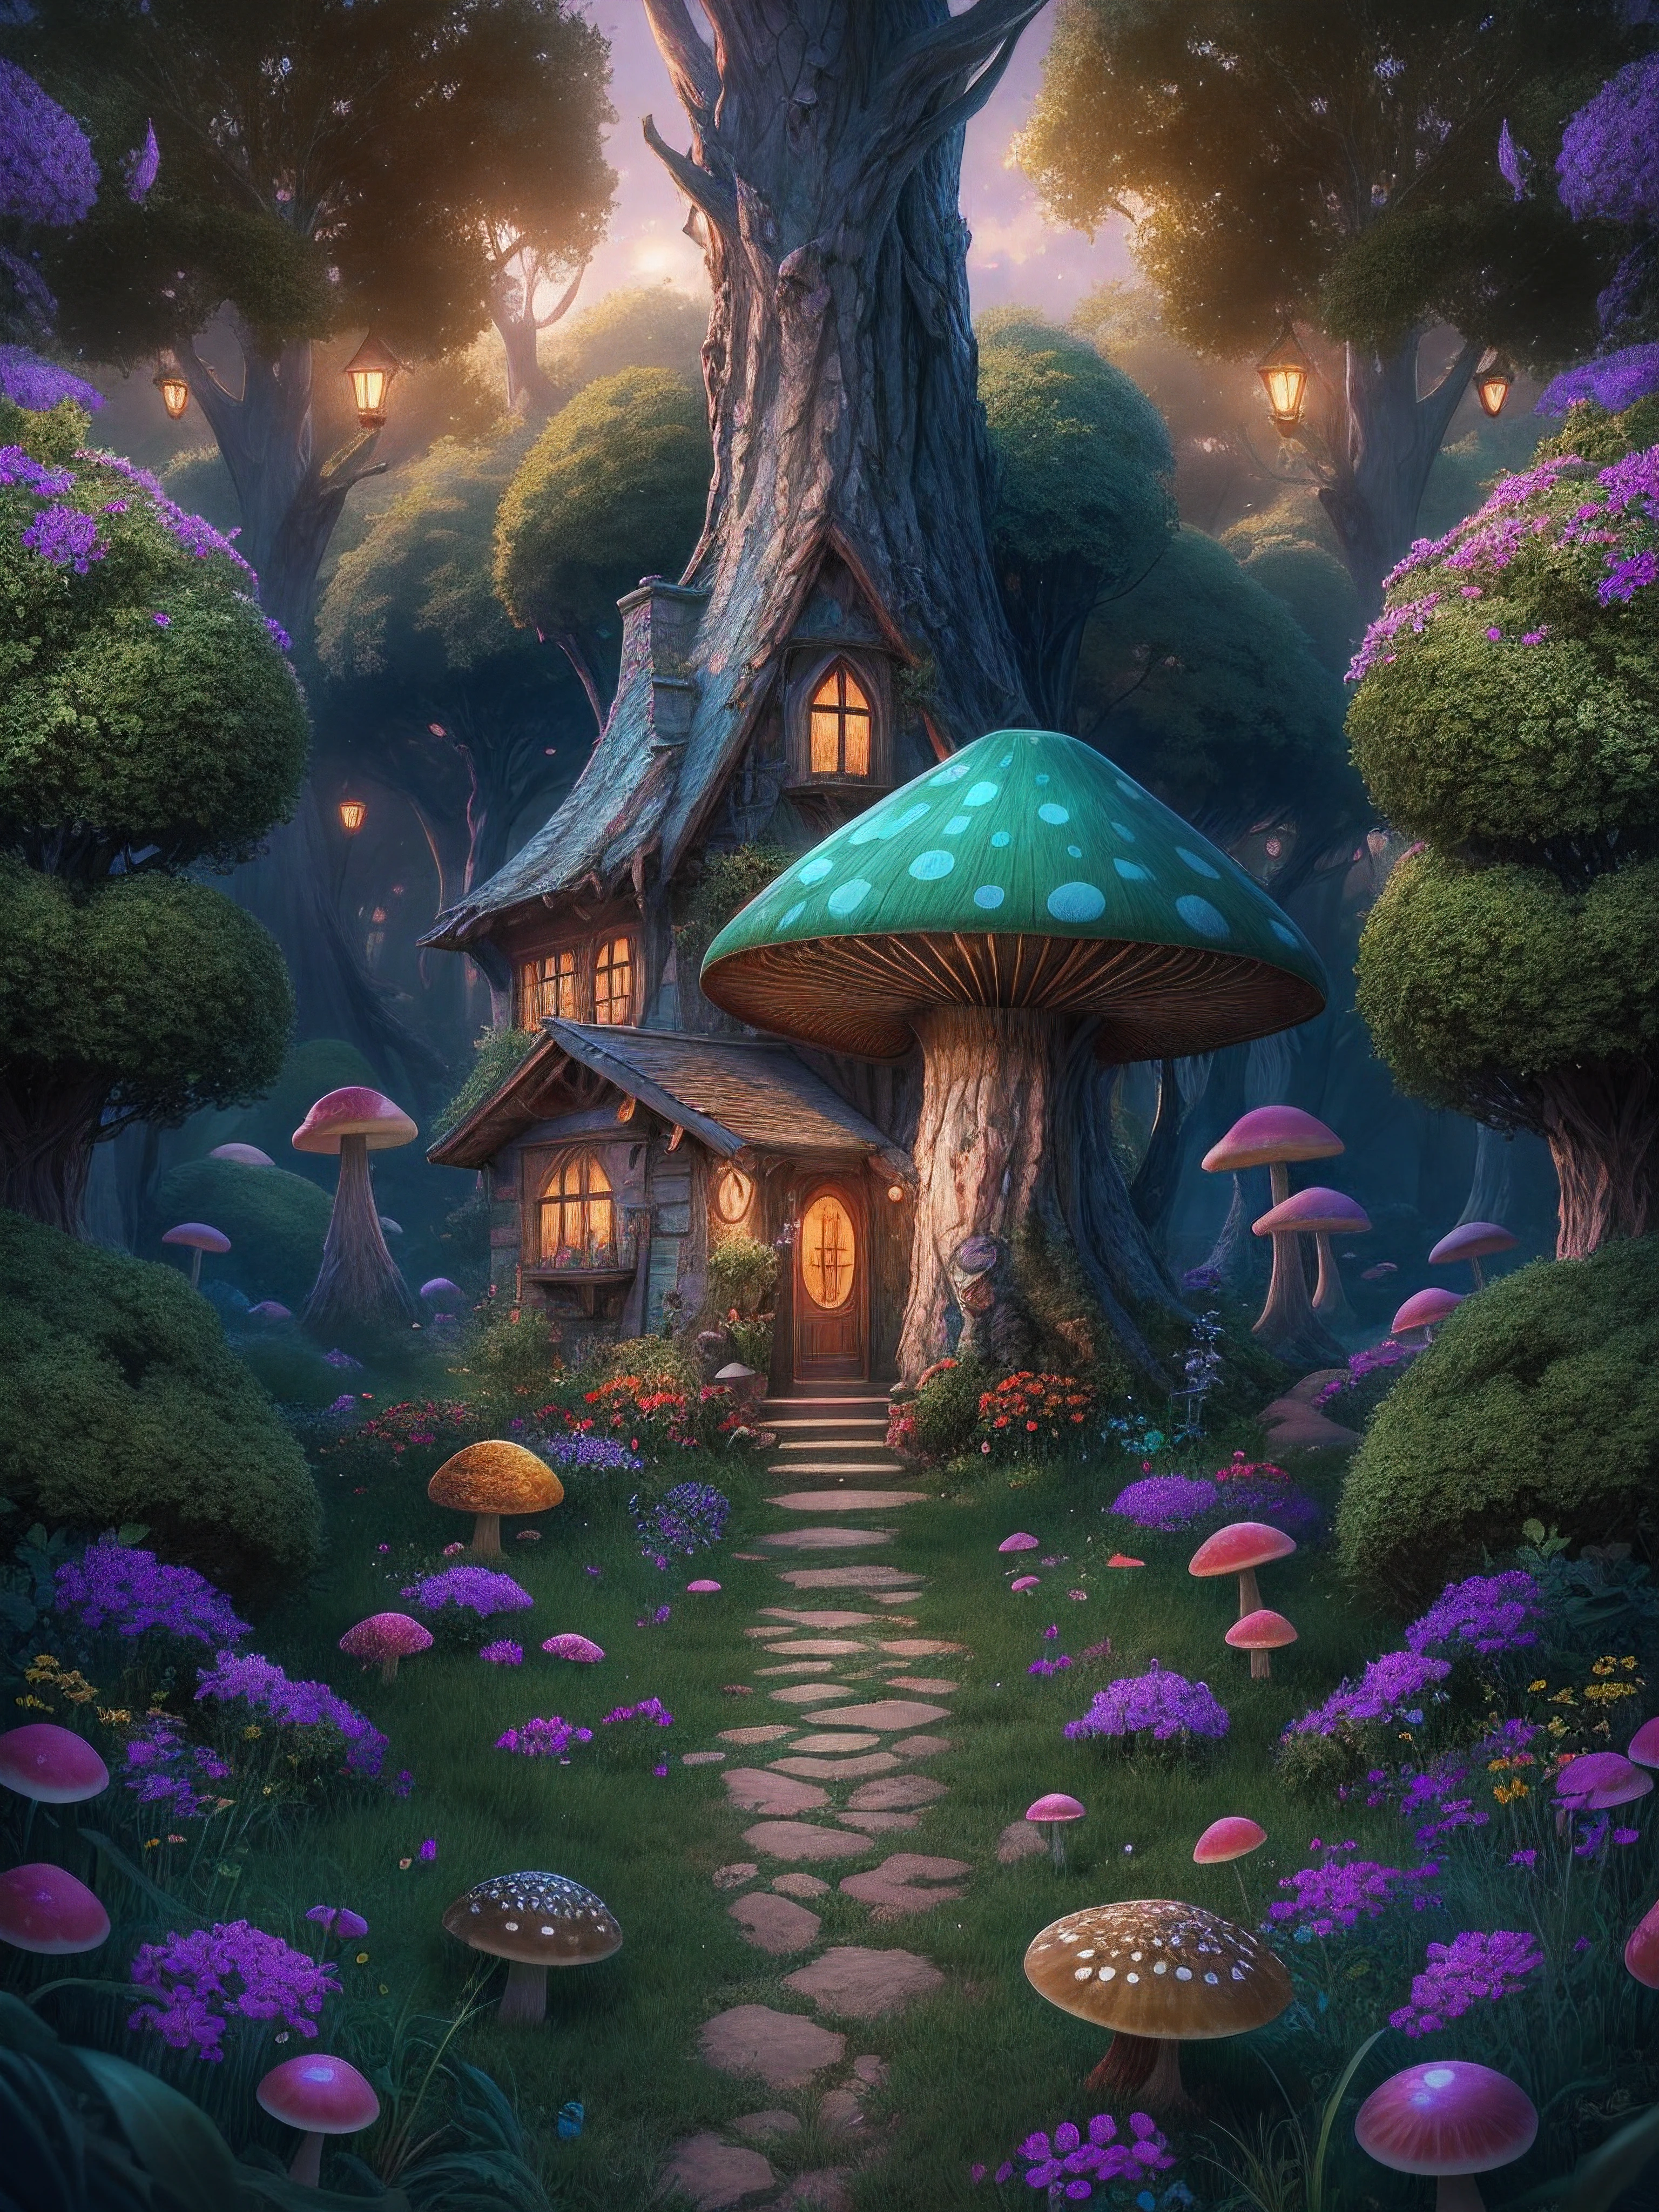 마법에 걸린 숲의 그림, 키가 큰 푸른 나무들과, 중앙에 있는 환상의 버섯에 있는 작고 화려한 집, 마법, 중심, 대칭, 그린, 뒤얽힌, 체적 조명, 아름다운, 풍부하고 깊은 색상의 걸작, 날카로운 초점, 매우 상세한, 천체 사진. 구성이 아주 알차네요, 8K, 완벽한 구성., 울트라 HD, 현실적인, 생생한 색상, 매우 상세한, UHD 드로잉, 펜과 잉크, 완벽한 구성, 아름다운 detailed 뒤얽힌 insanely detailed octane render trending on artstation, 8k 예술적인 사진, photo현실적인 concept art, 부드럽고 자연스러운 볼류메트릭 시네마틱 완벽한 조명